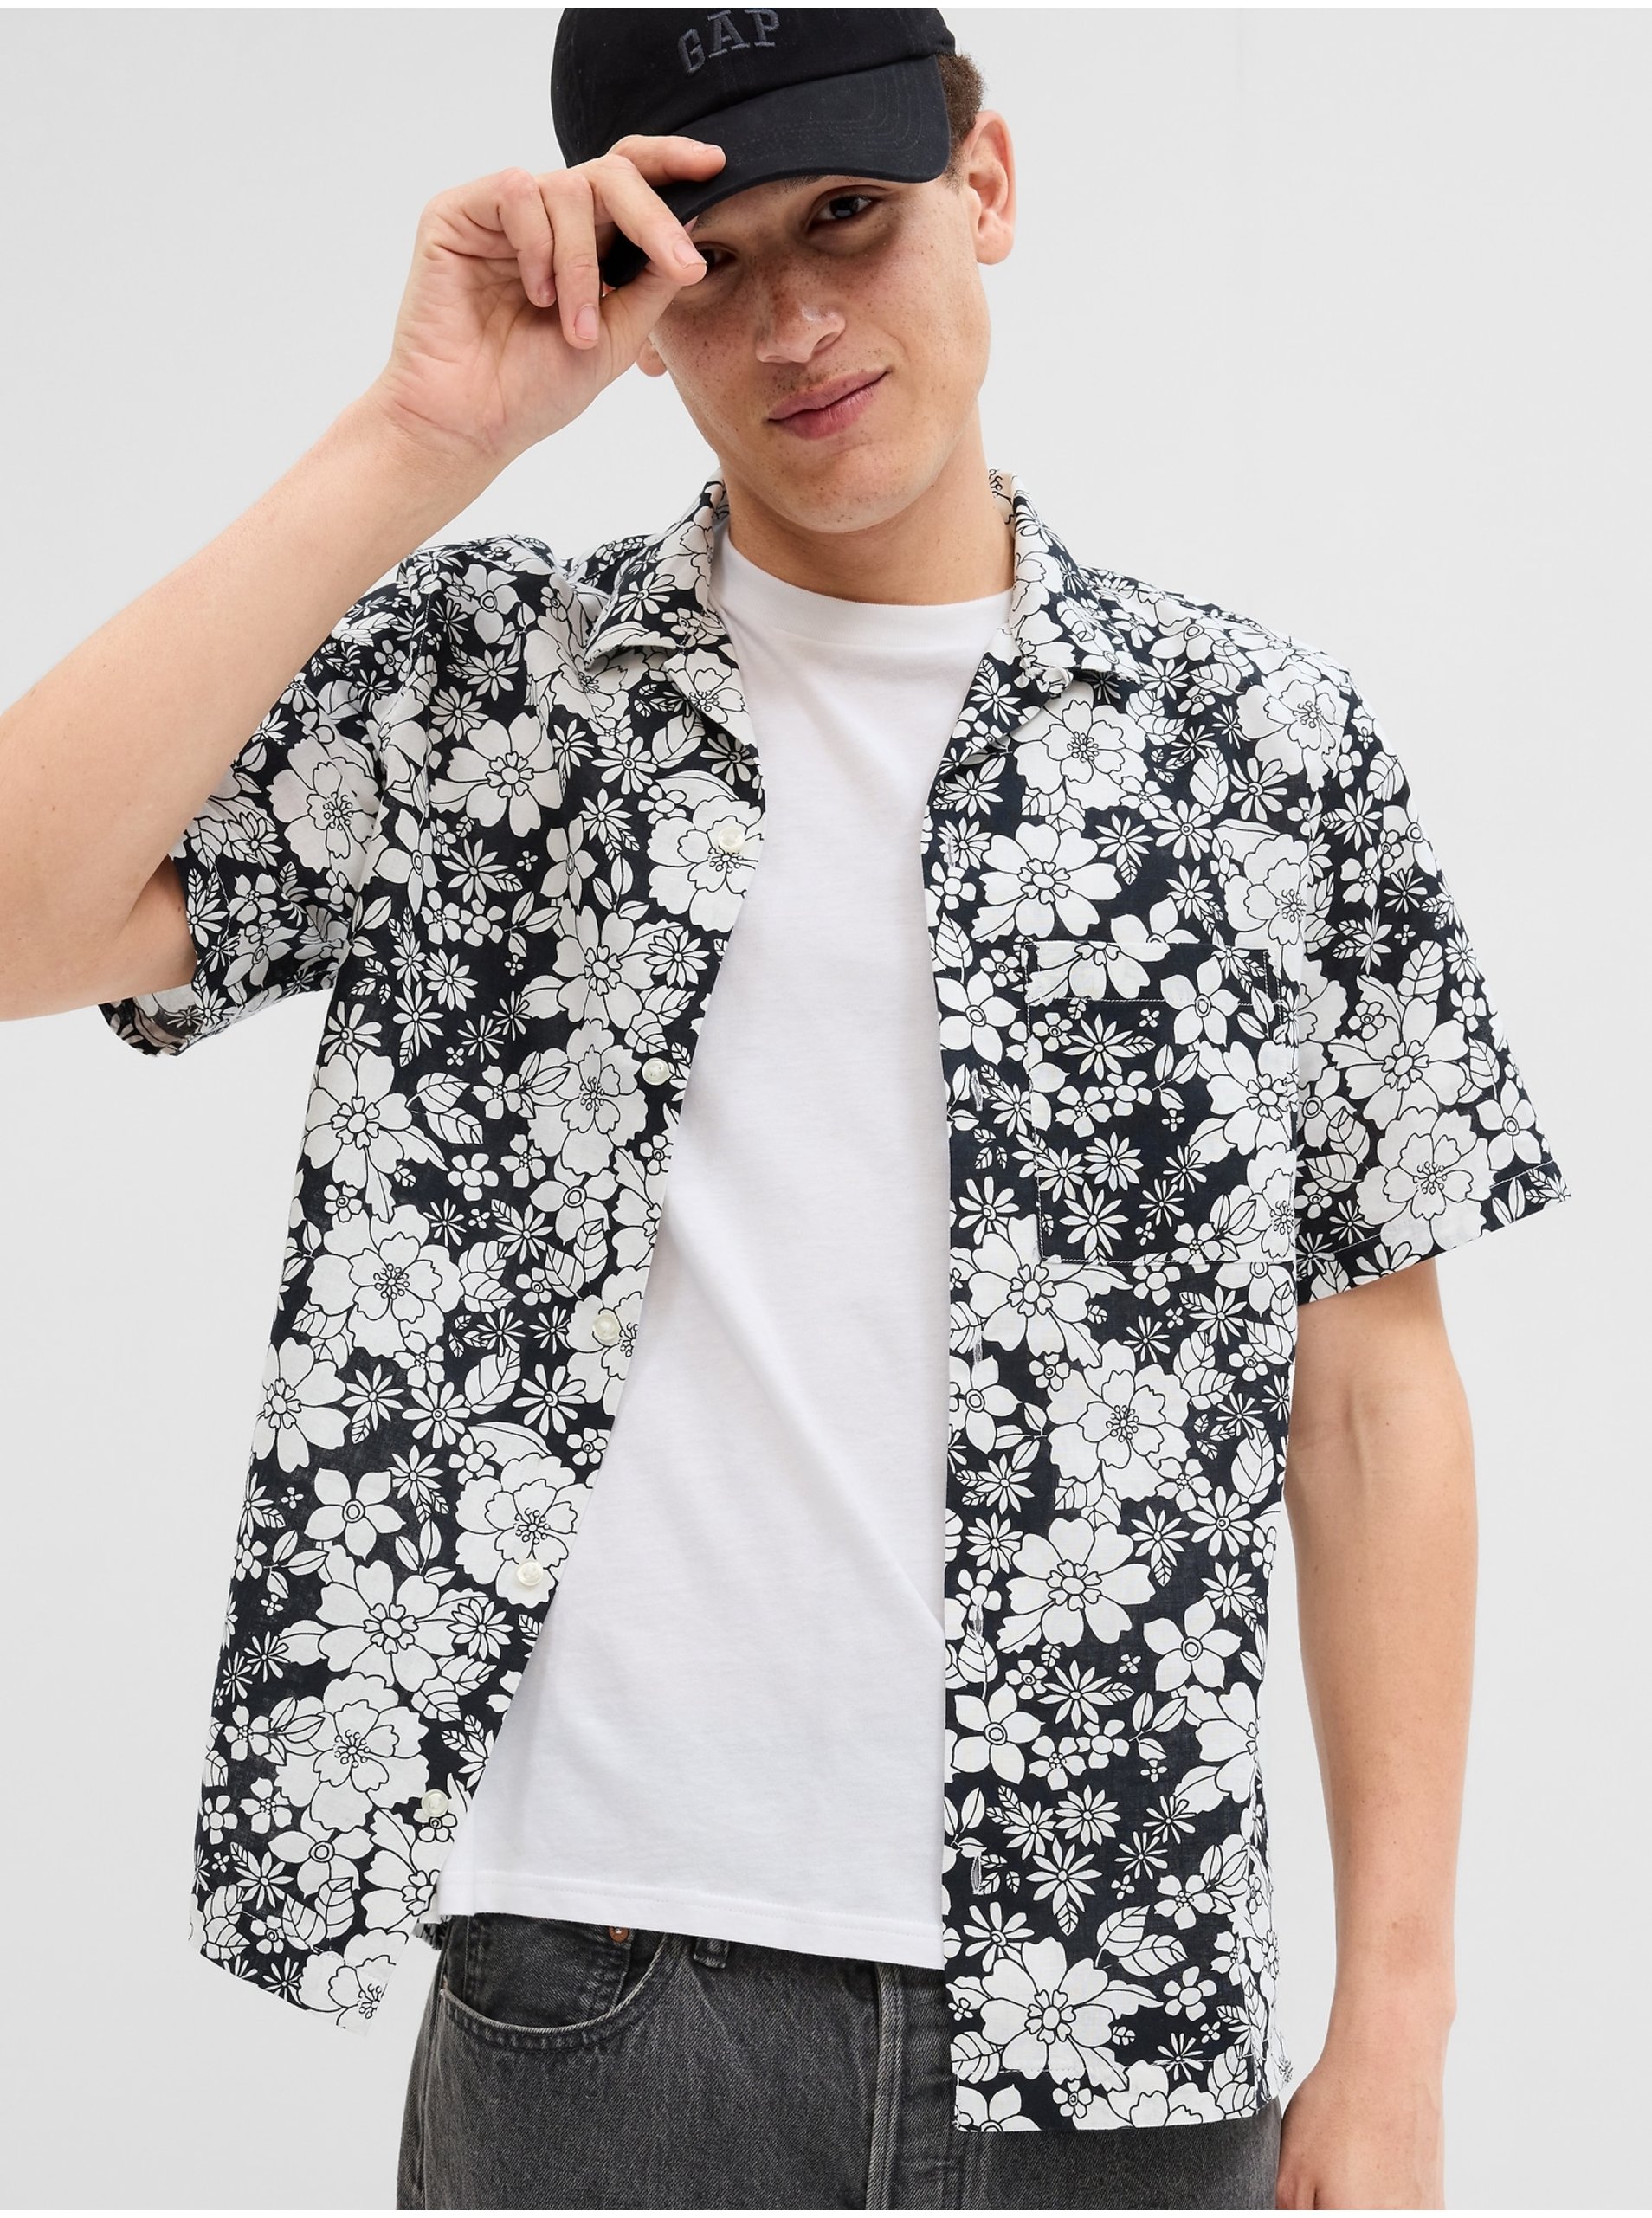 E-shop Bílo-černá pánská květovaná košile s krátkým rukávem GAP